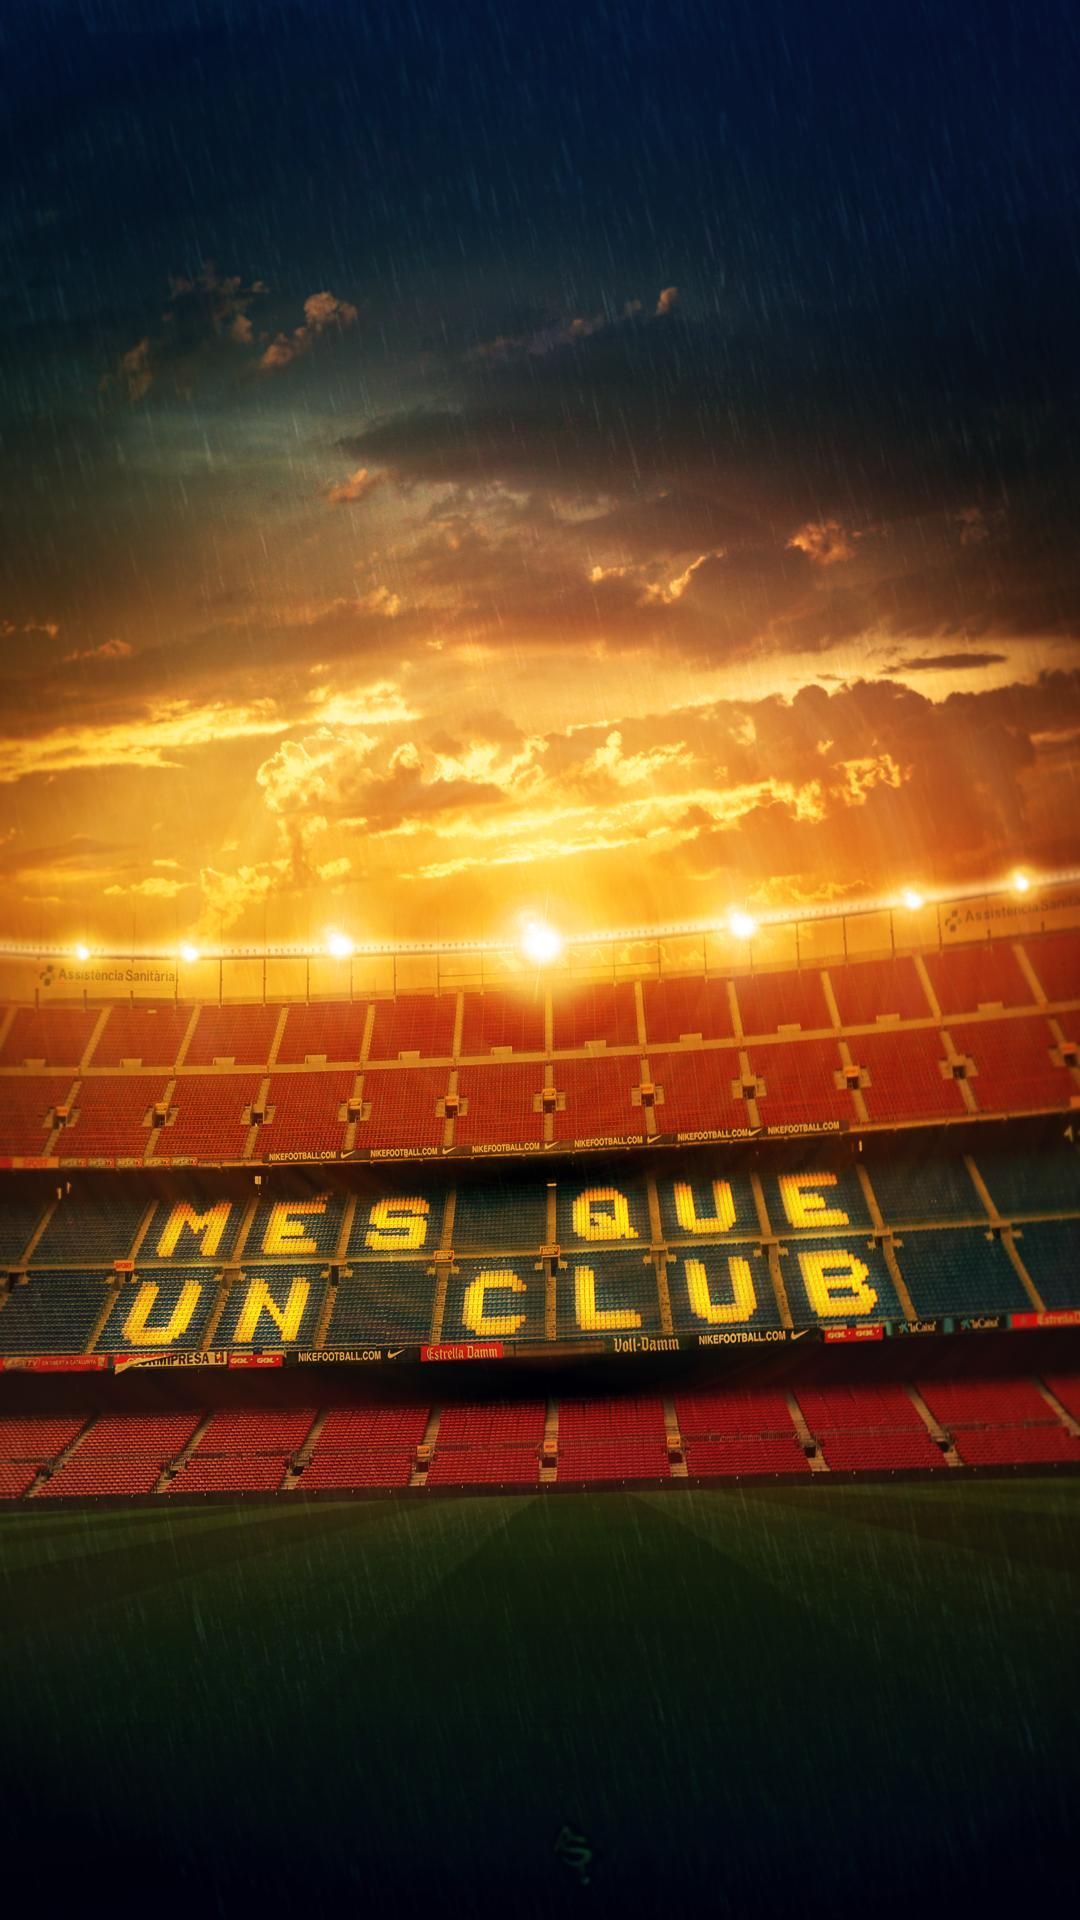 Més que un club. i més que un estadi. .. More Than A Club has great social, political, and histori. Barcelona futbol club, Fcb barcelona, Barcelona football